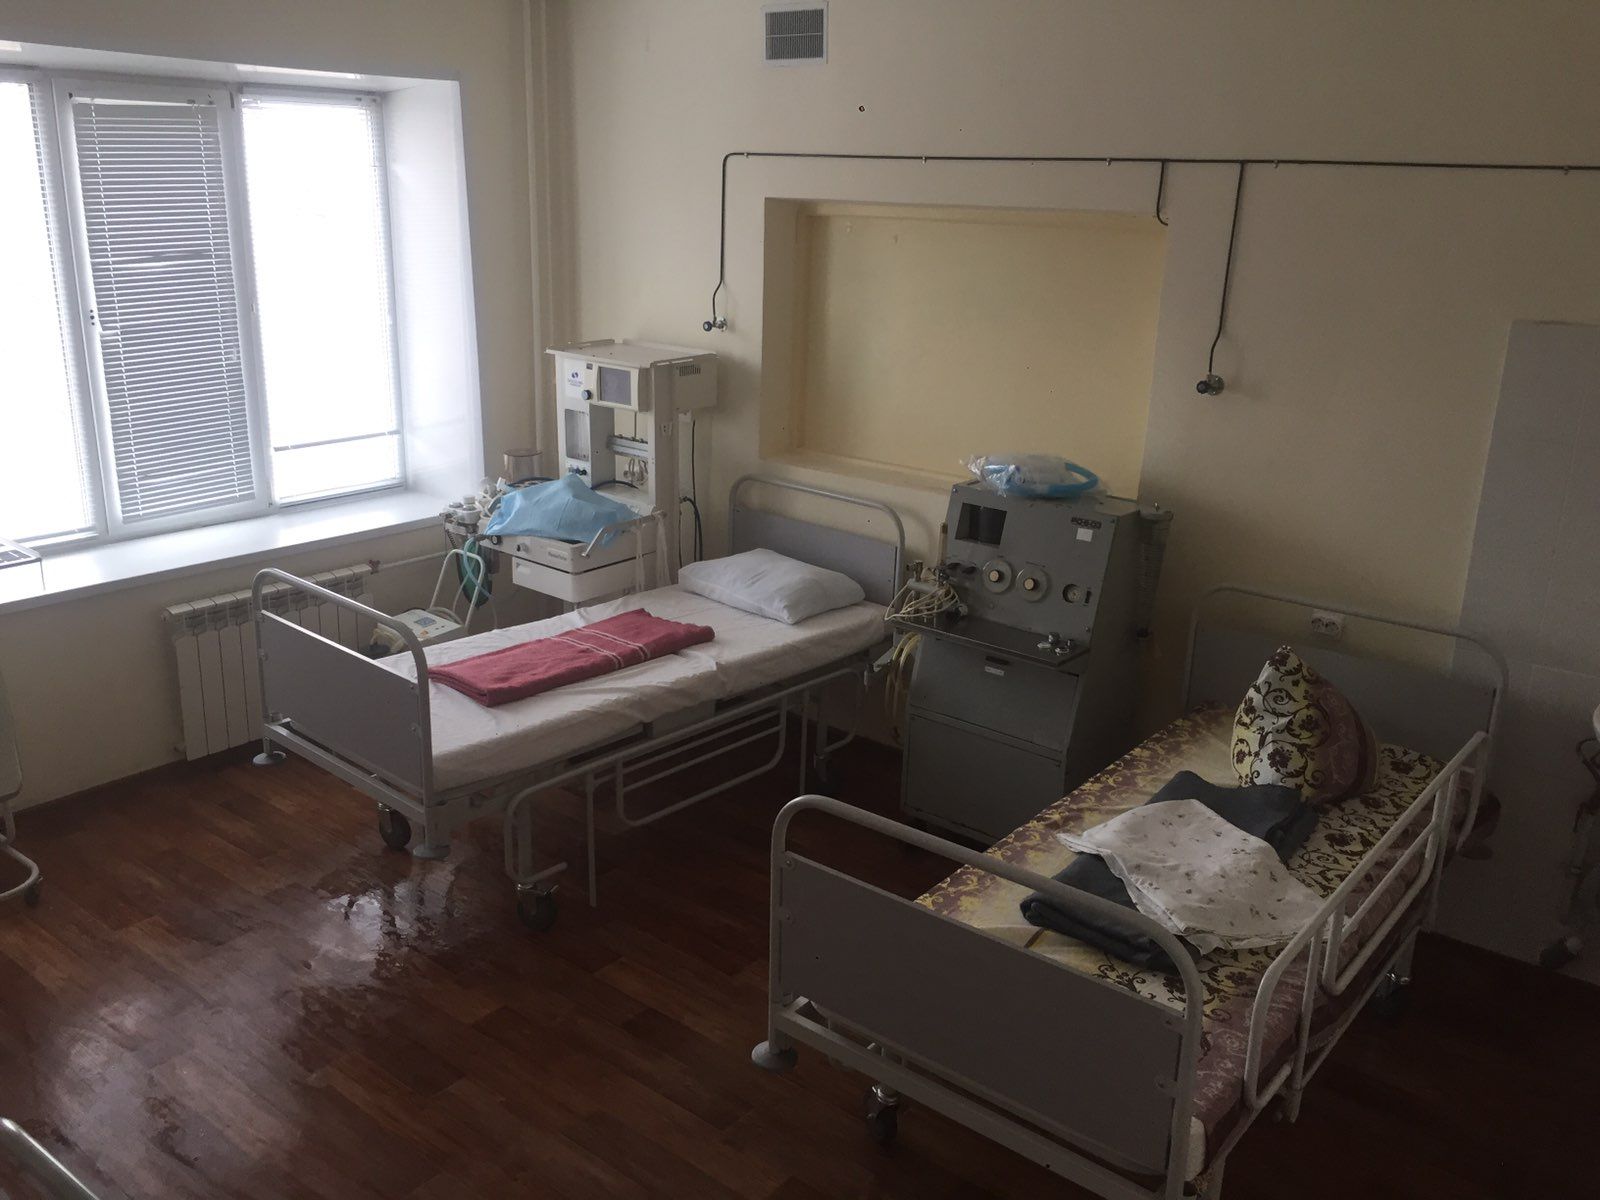 Алексей Алешкевич опроверг слухи о фальсификациях при оборудовании коронавирусного госпиталя в Потанино